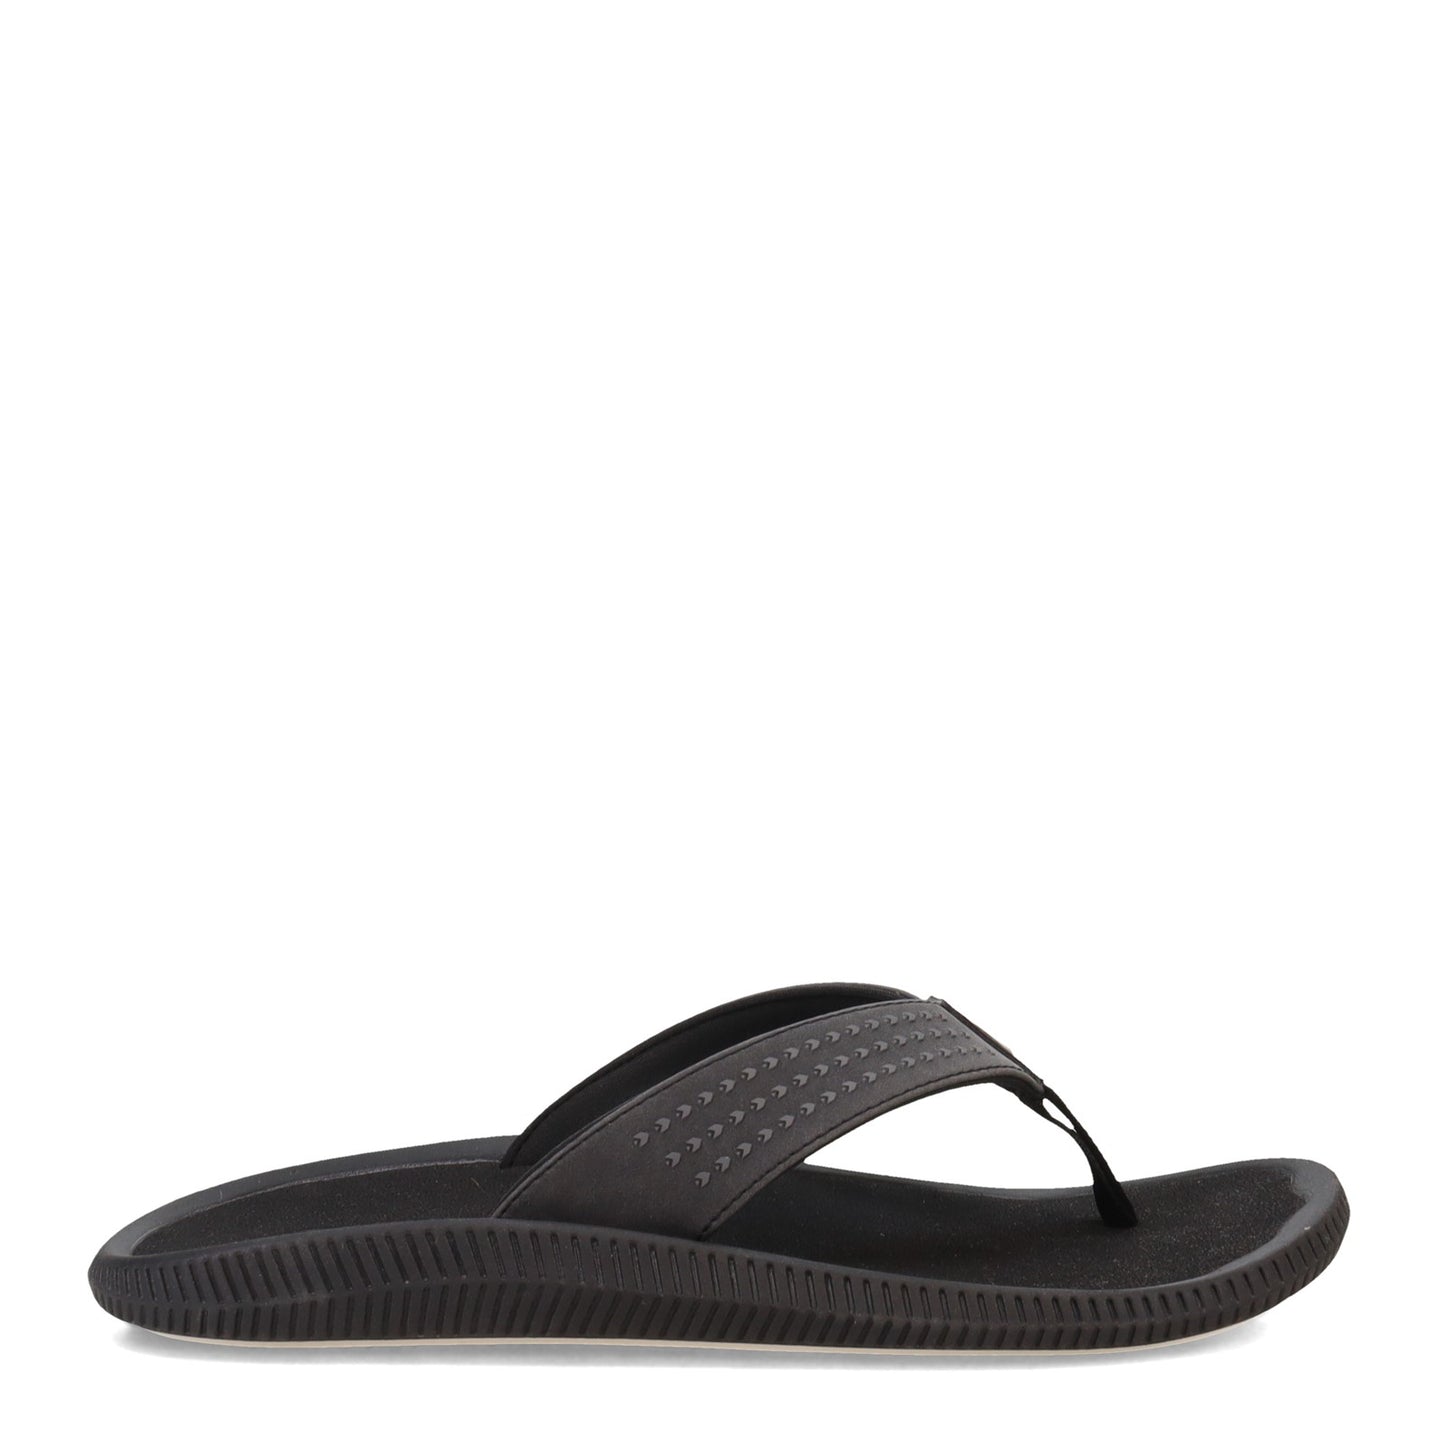 Peltz Shoes  Men's OluKai Ulele Sandal Black Black 10435-4040